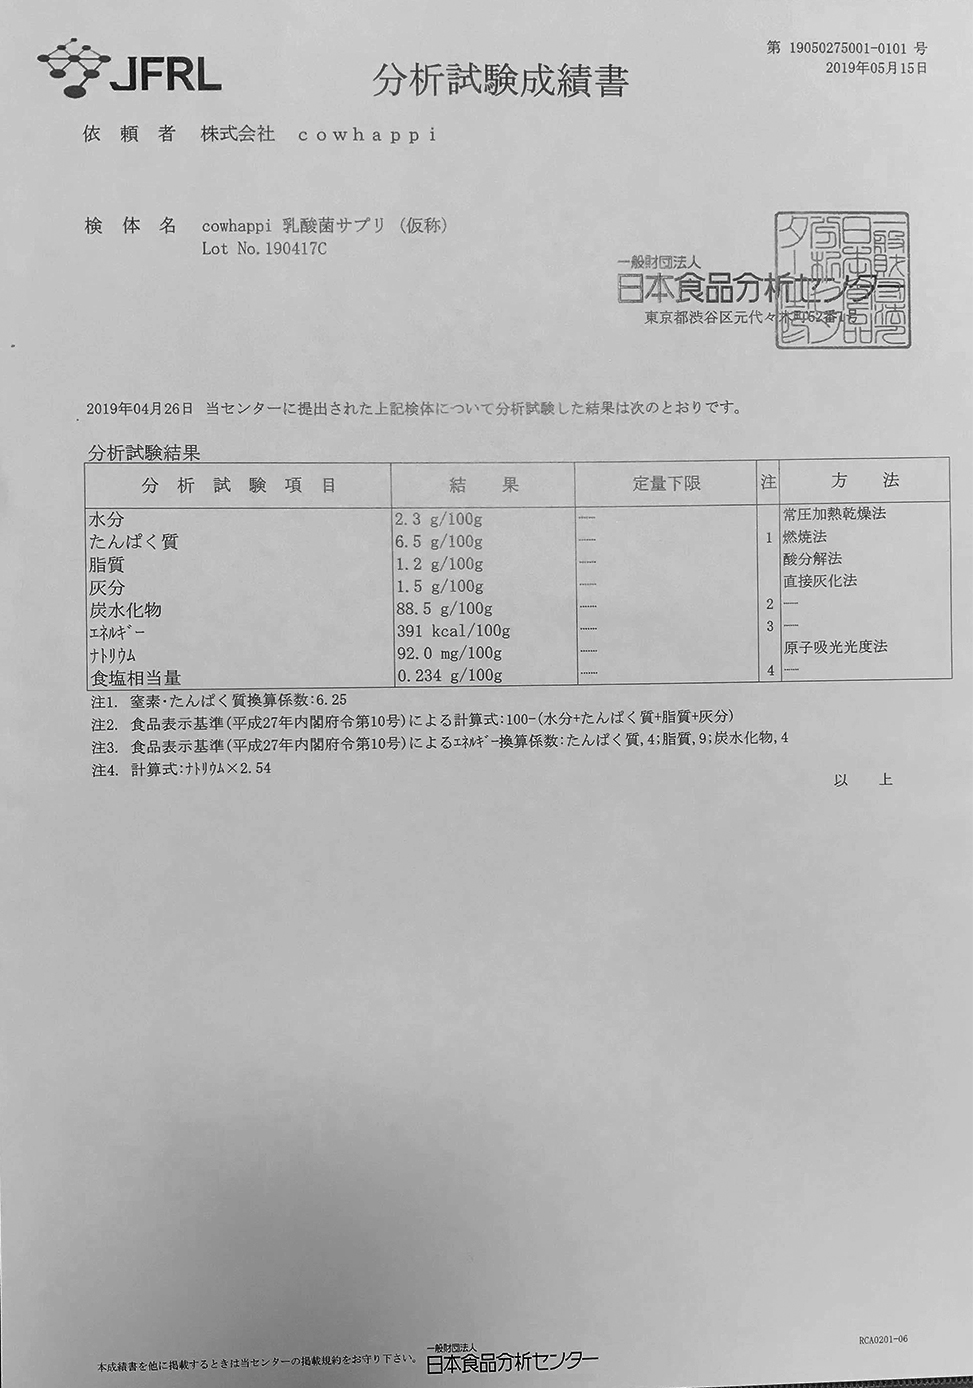 マルチ乳酸菌Prime 日本食品分析センターで成分分析した「分析試験成績書」公開